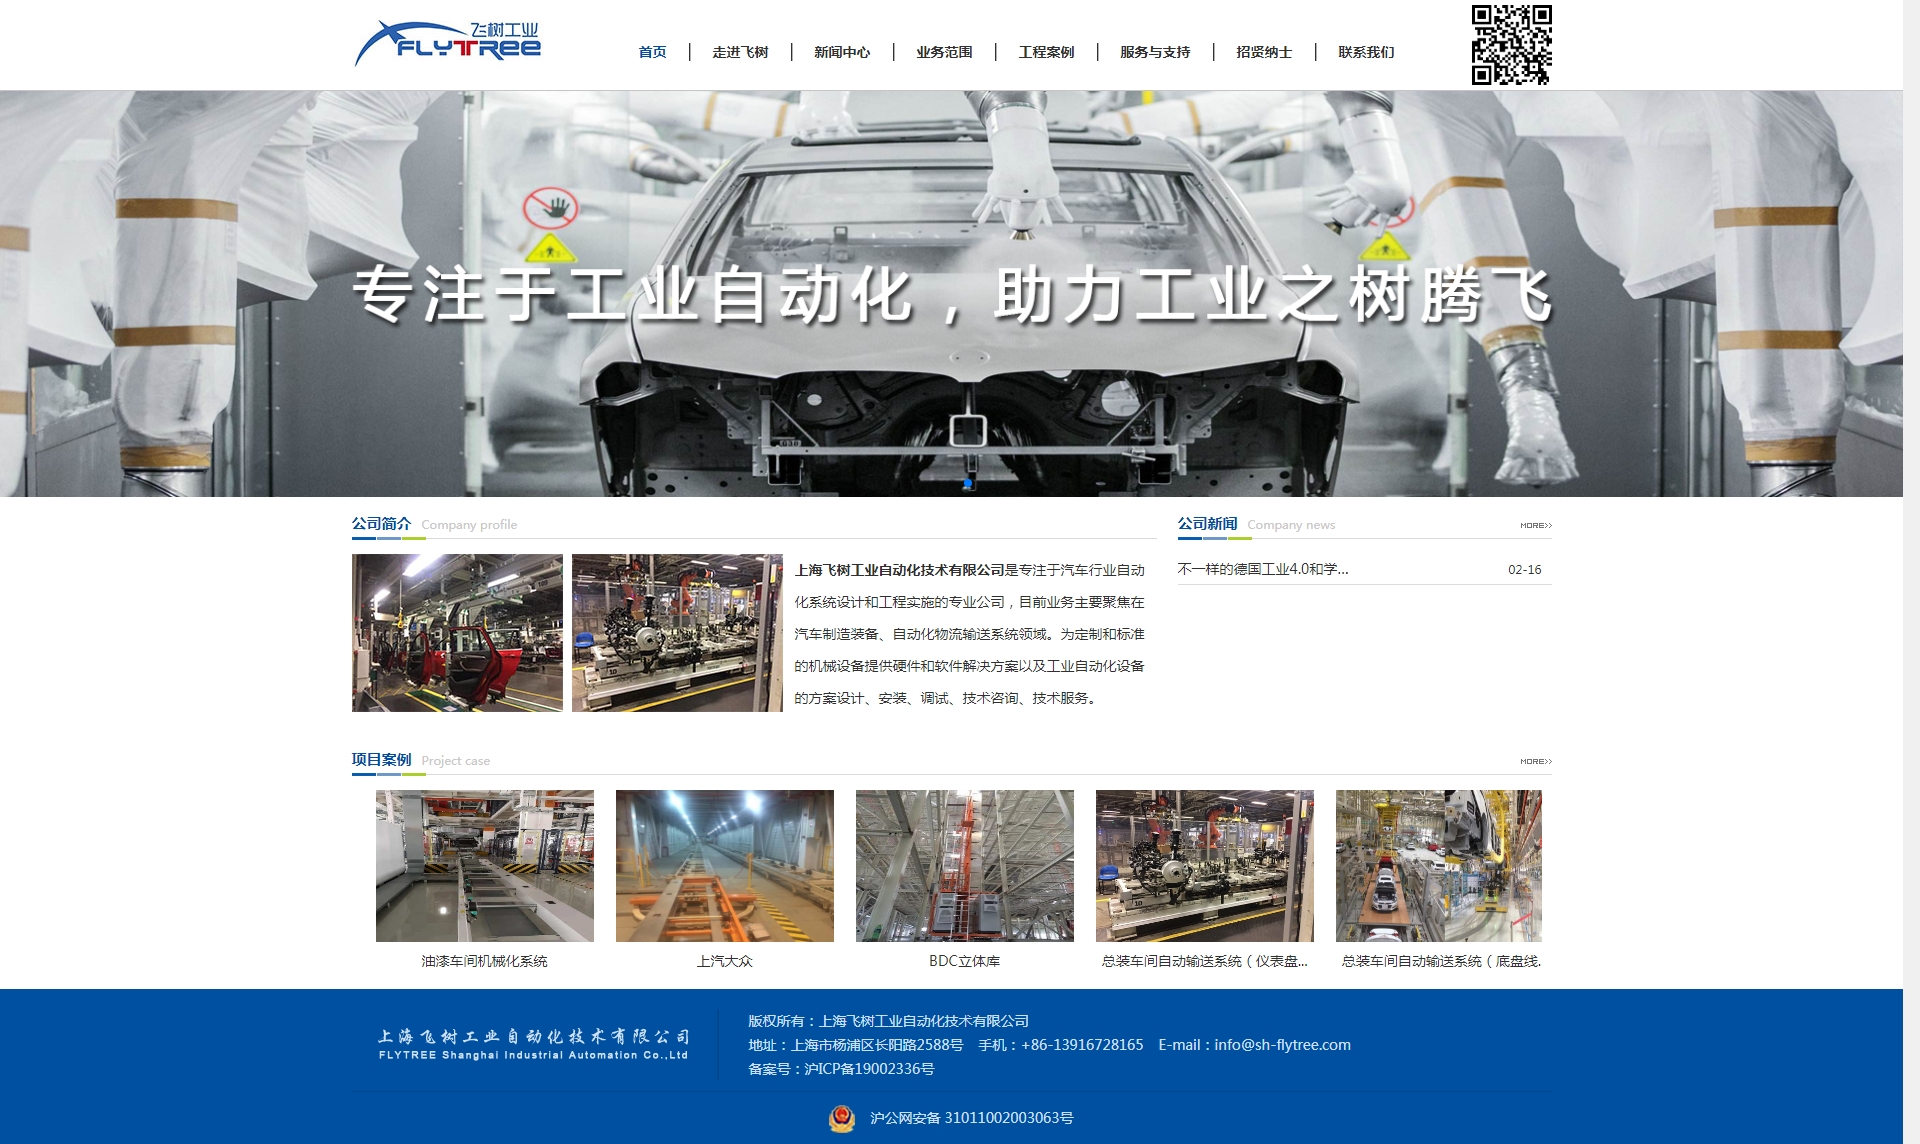 上海飞树工业自动化技术有限公司- 上海飞树工业自动化技术有限公司.jpg